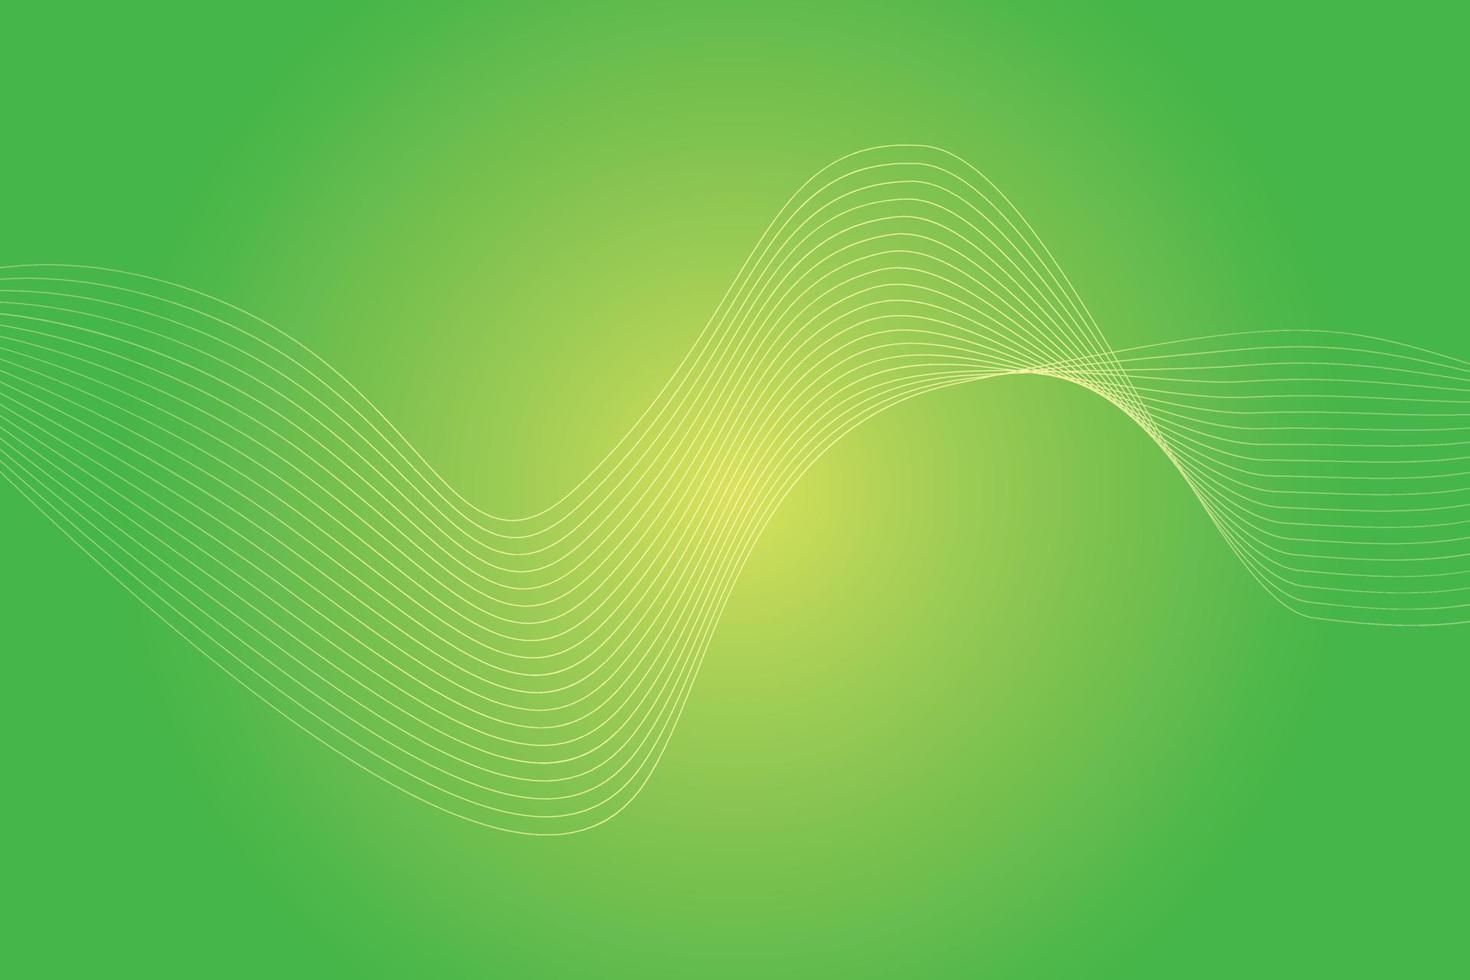 abstrakter Hintergrund mit bunten Wellenlinien. abstraktes grün-gelbes Farbverlauf-Hintergrunddesign vektor